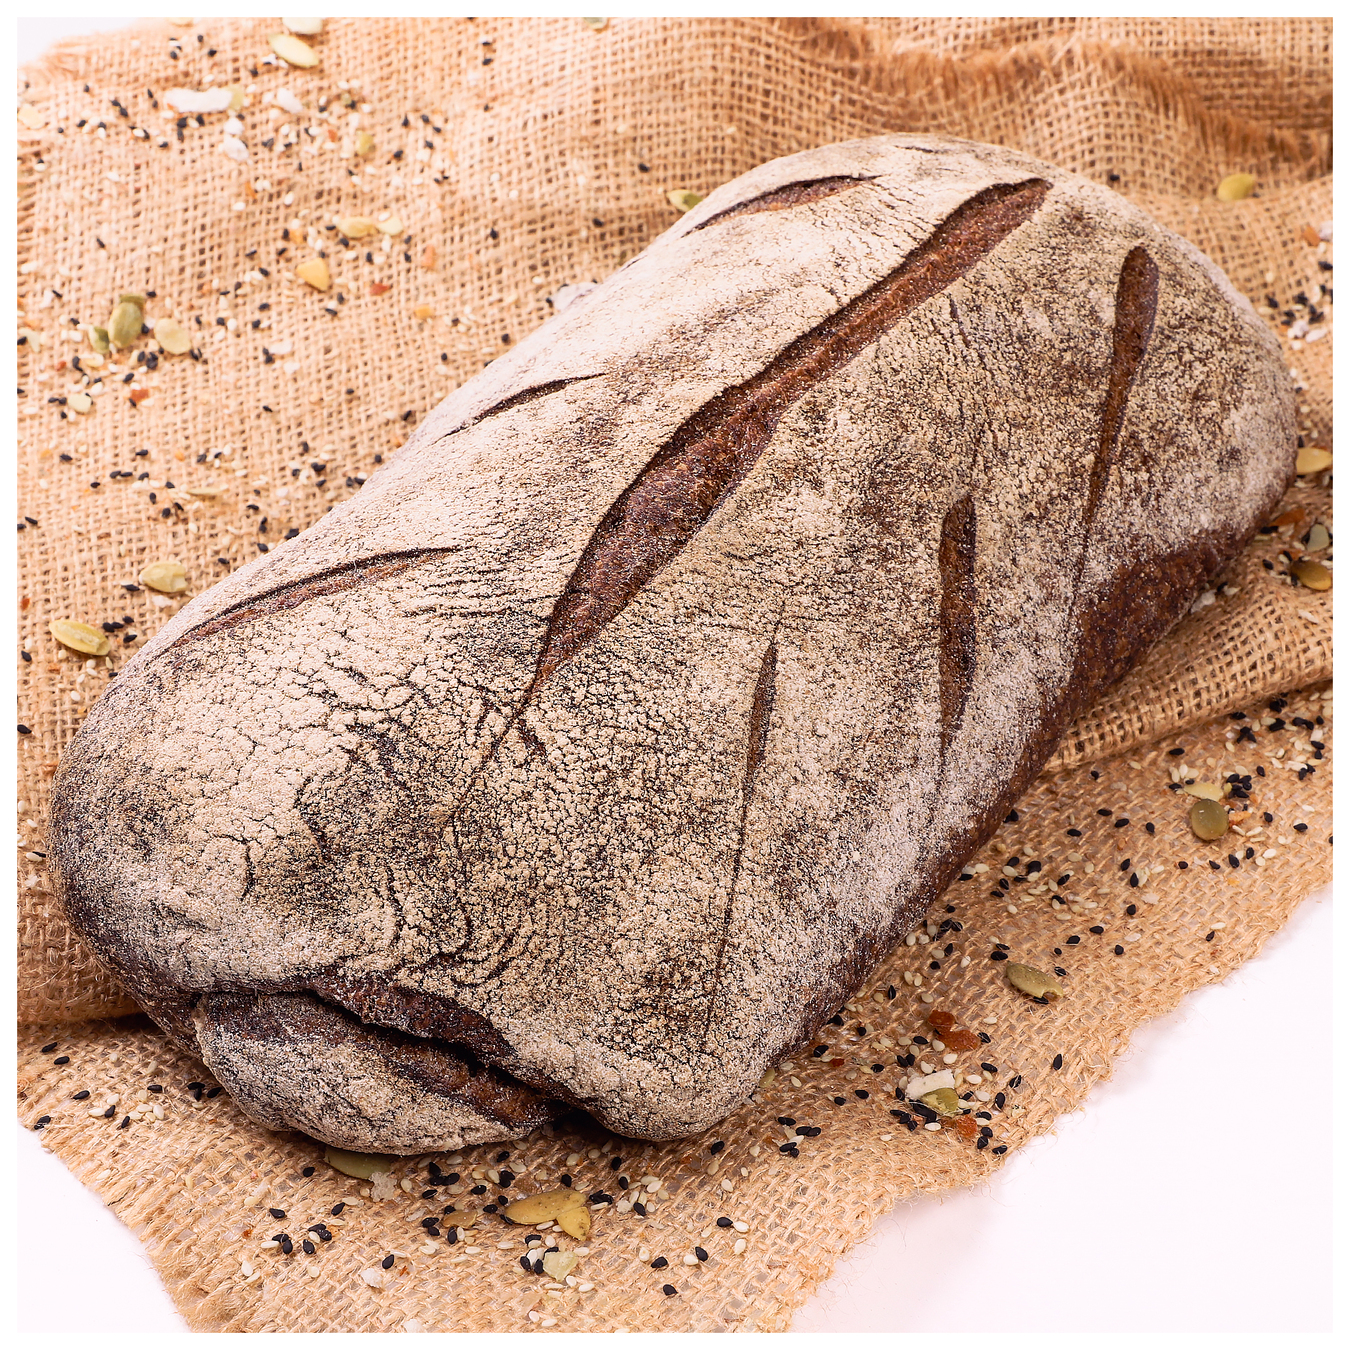 Хліб Пряно-солодовий подовий